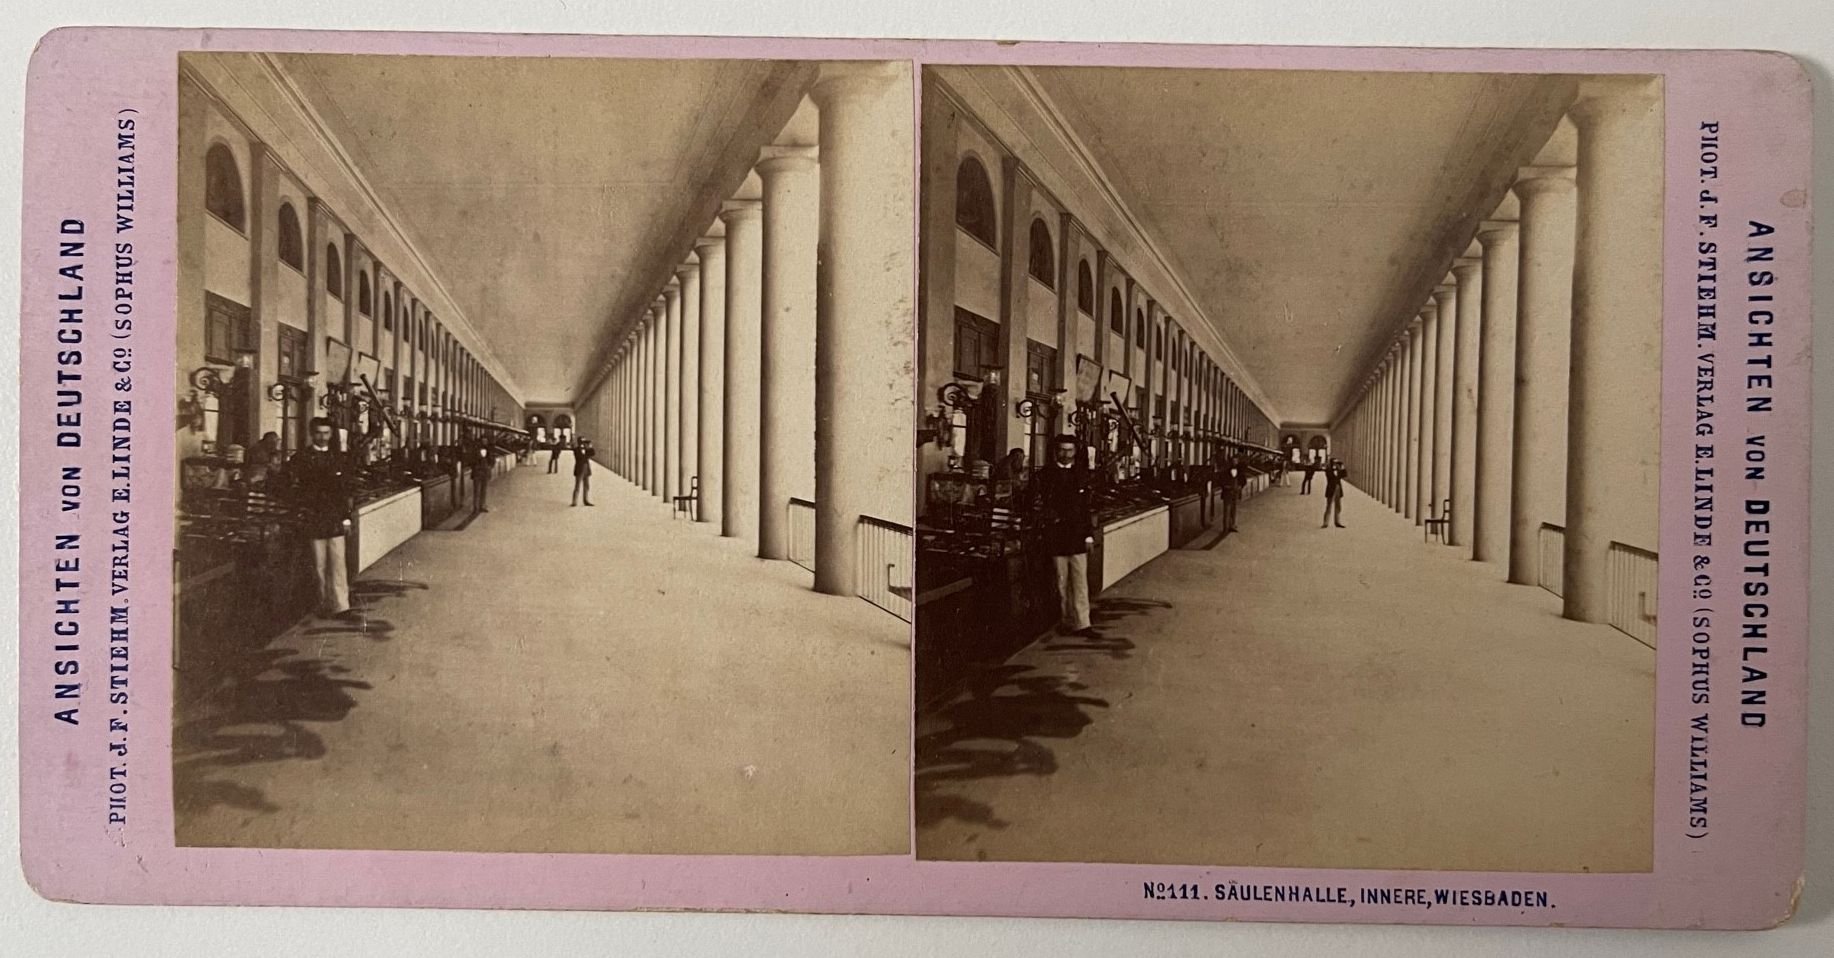 Stereobild, J. F. Stiehm, Wiesbaden, No. 111 Säulenhalle, Innere, Wiesbaden, ca. 1880. (Taunus-Rhein-Main - Regionalgeschichtliche Sammlung Dr. Stefan Naas CC BY-NC-SA)